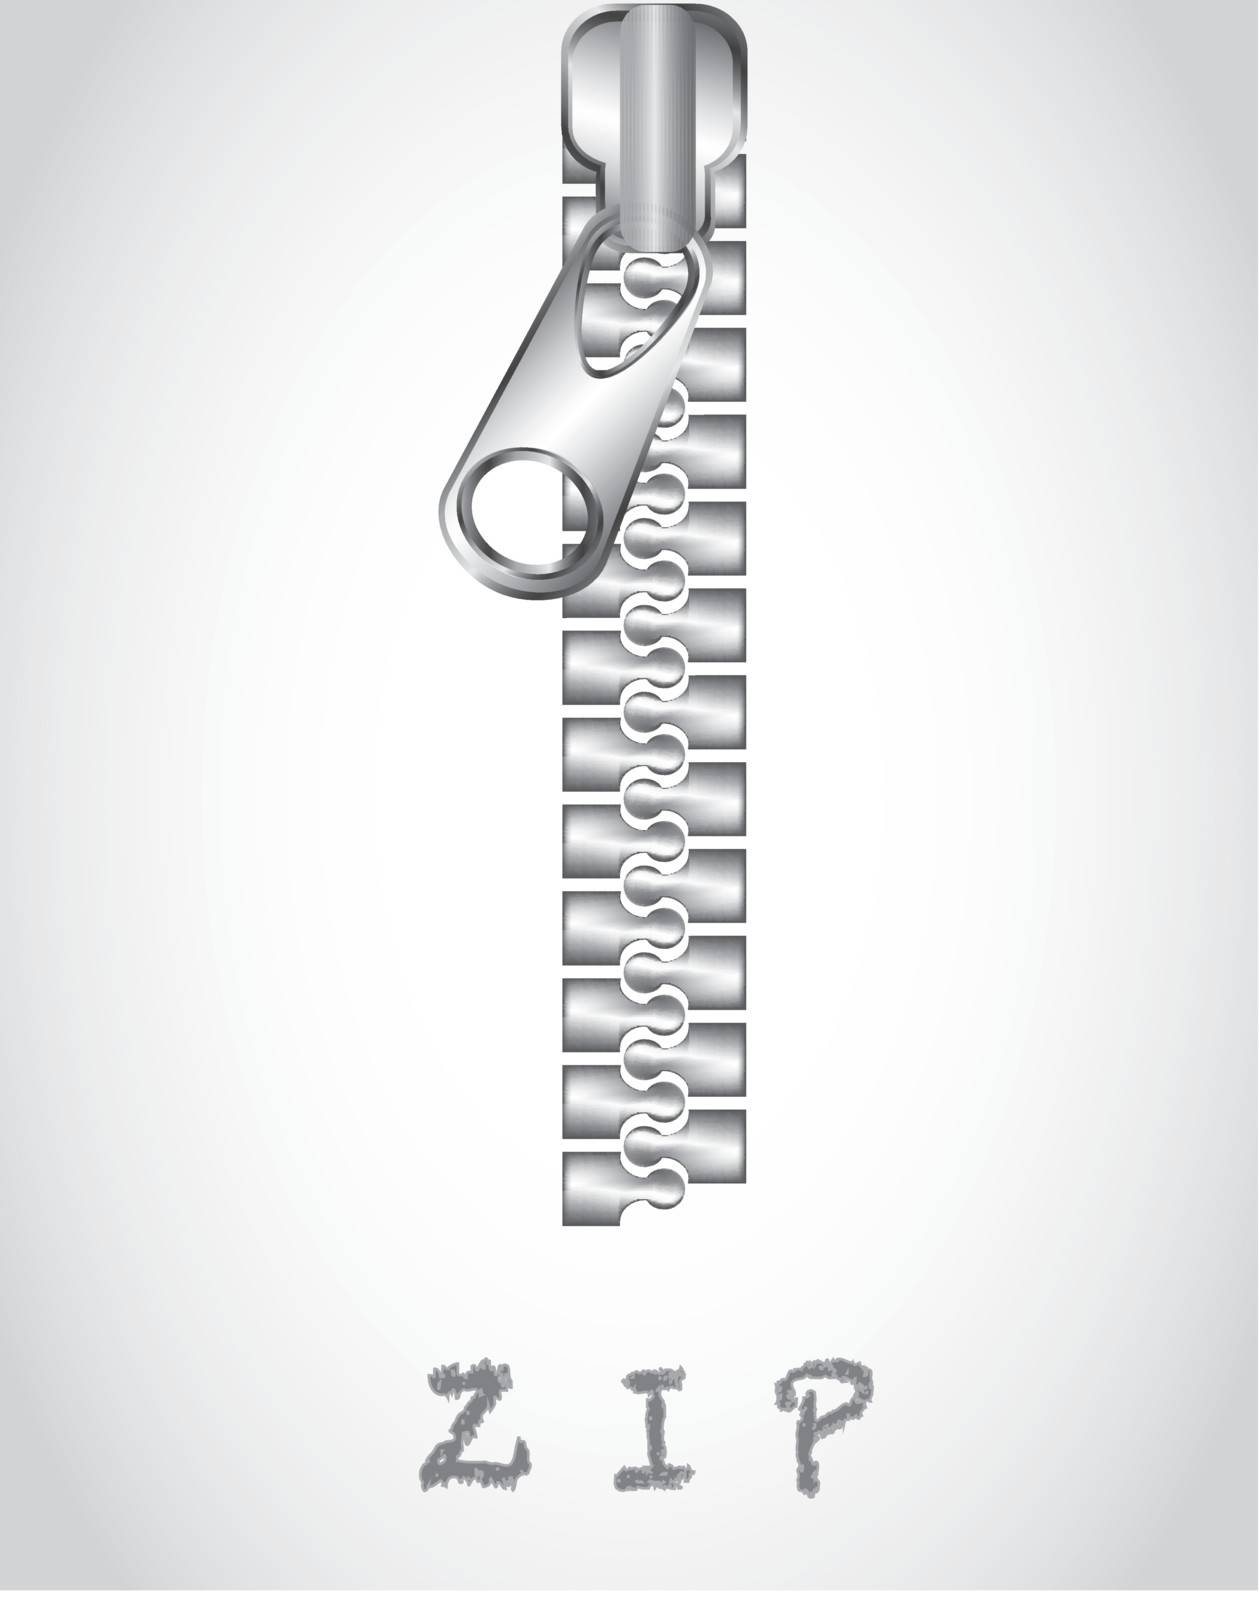 Chrome Zipper over white background vector illustration